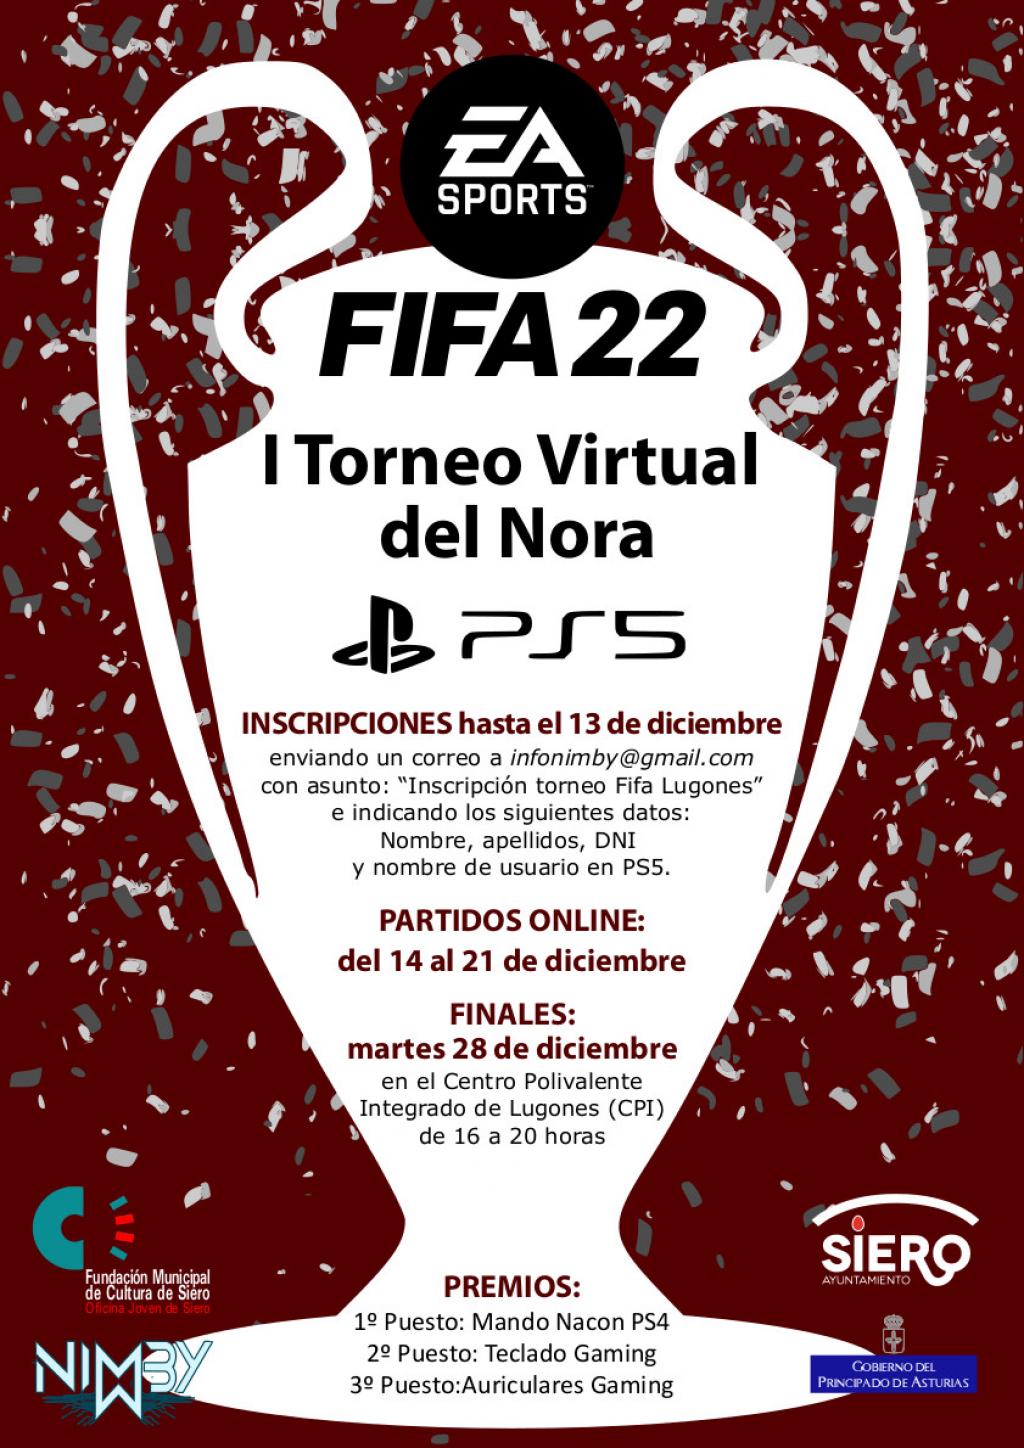 El Tapin - Siero organiza el I Torneo Virtual del Nora PS5 del FIFA 22